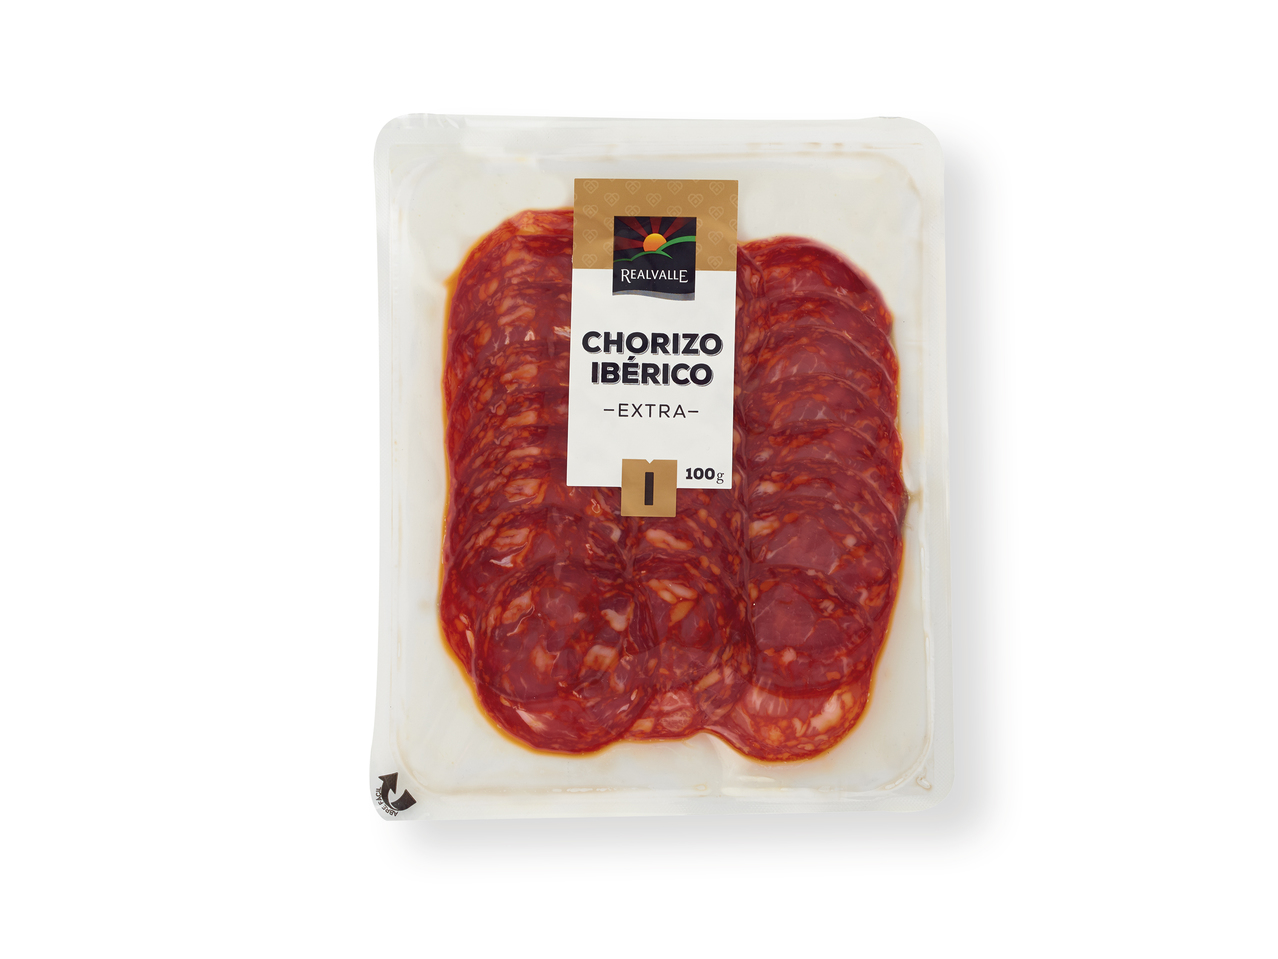 'Realvalle(R)' Chorizo ibérico